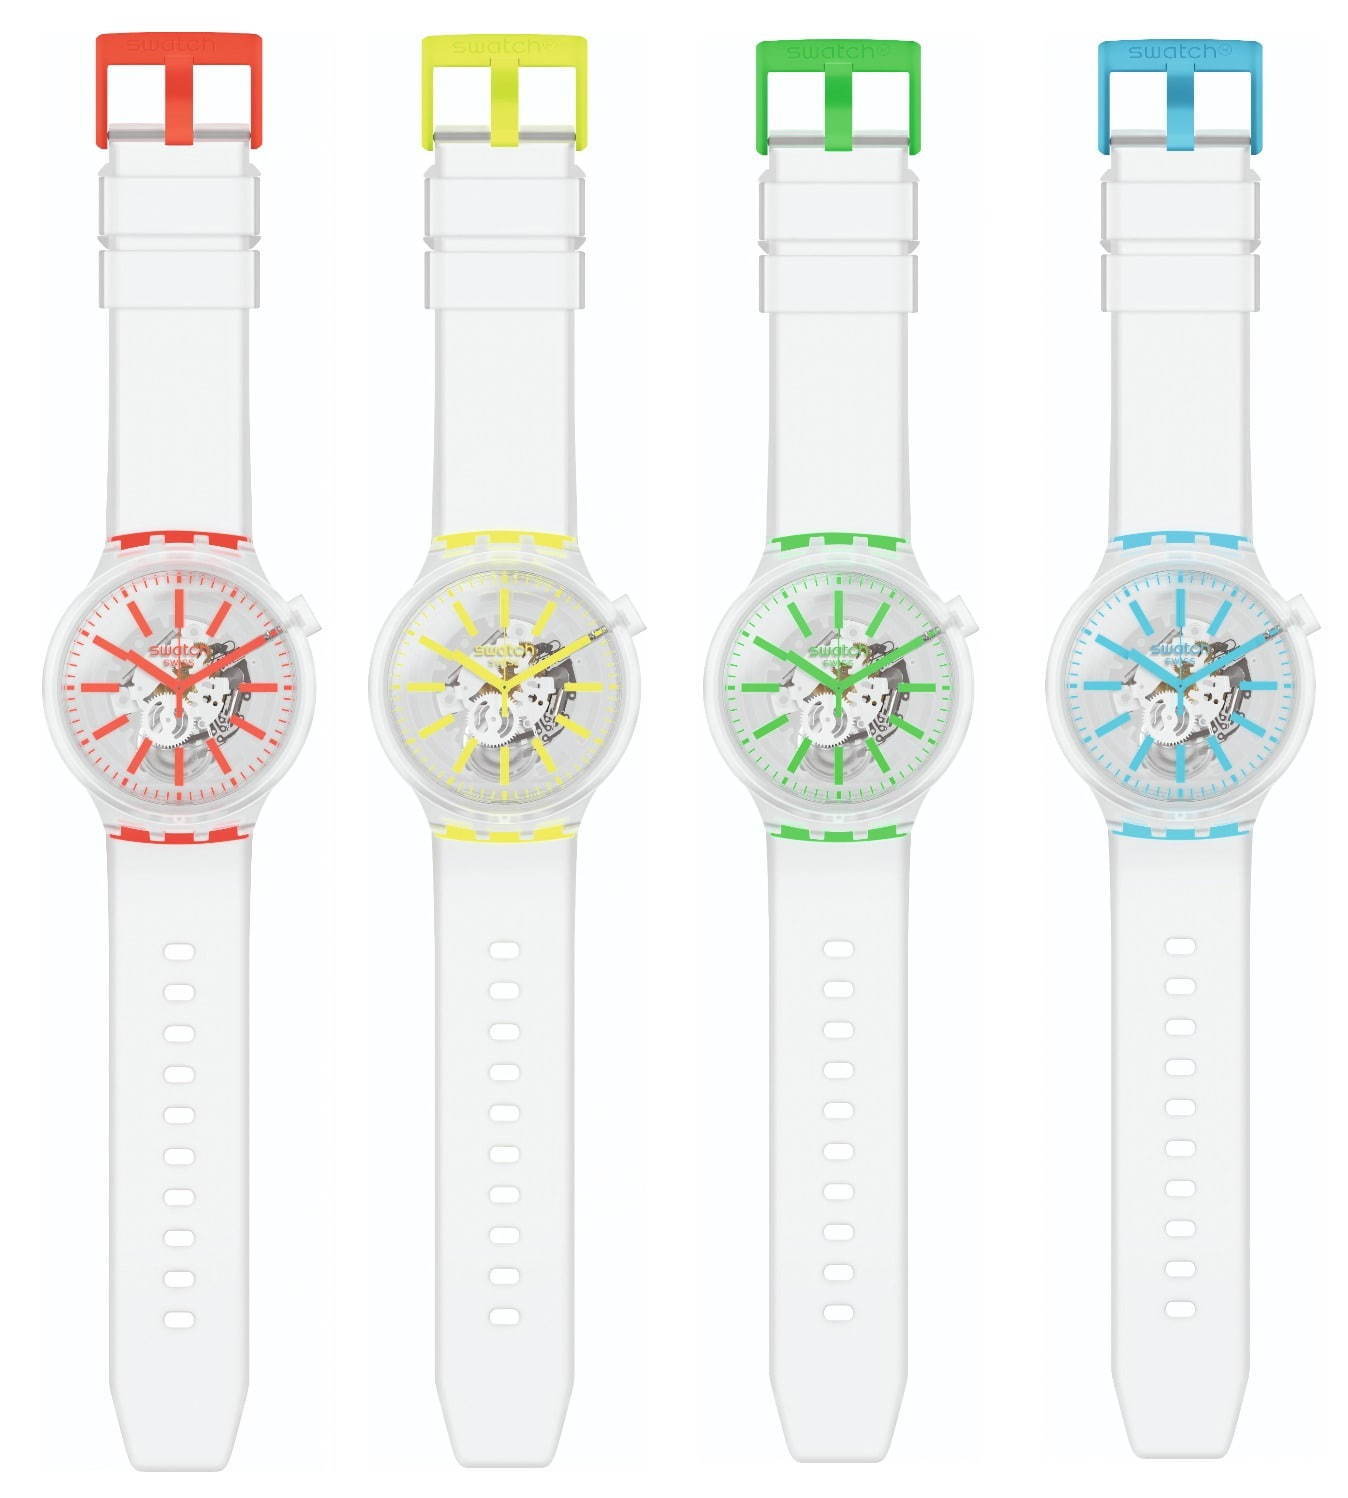 スウォッチ新作腕時計「ビッグボールド ジェリーネオン」スケルトンケースの“限りなく透明”なウォッチ コピー